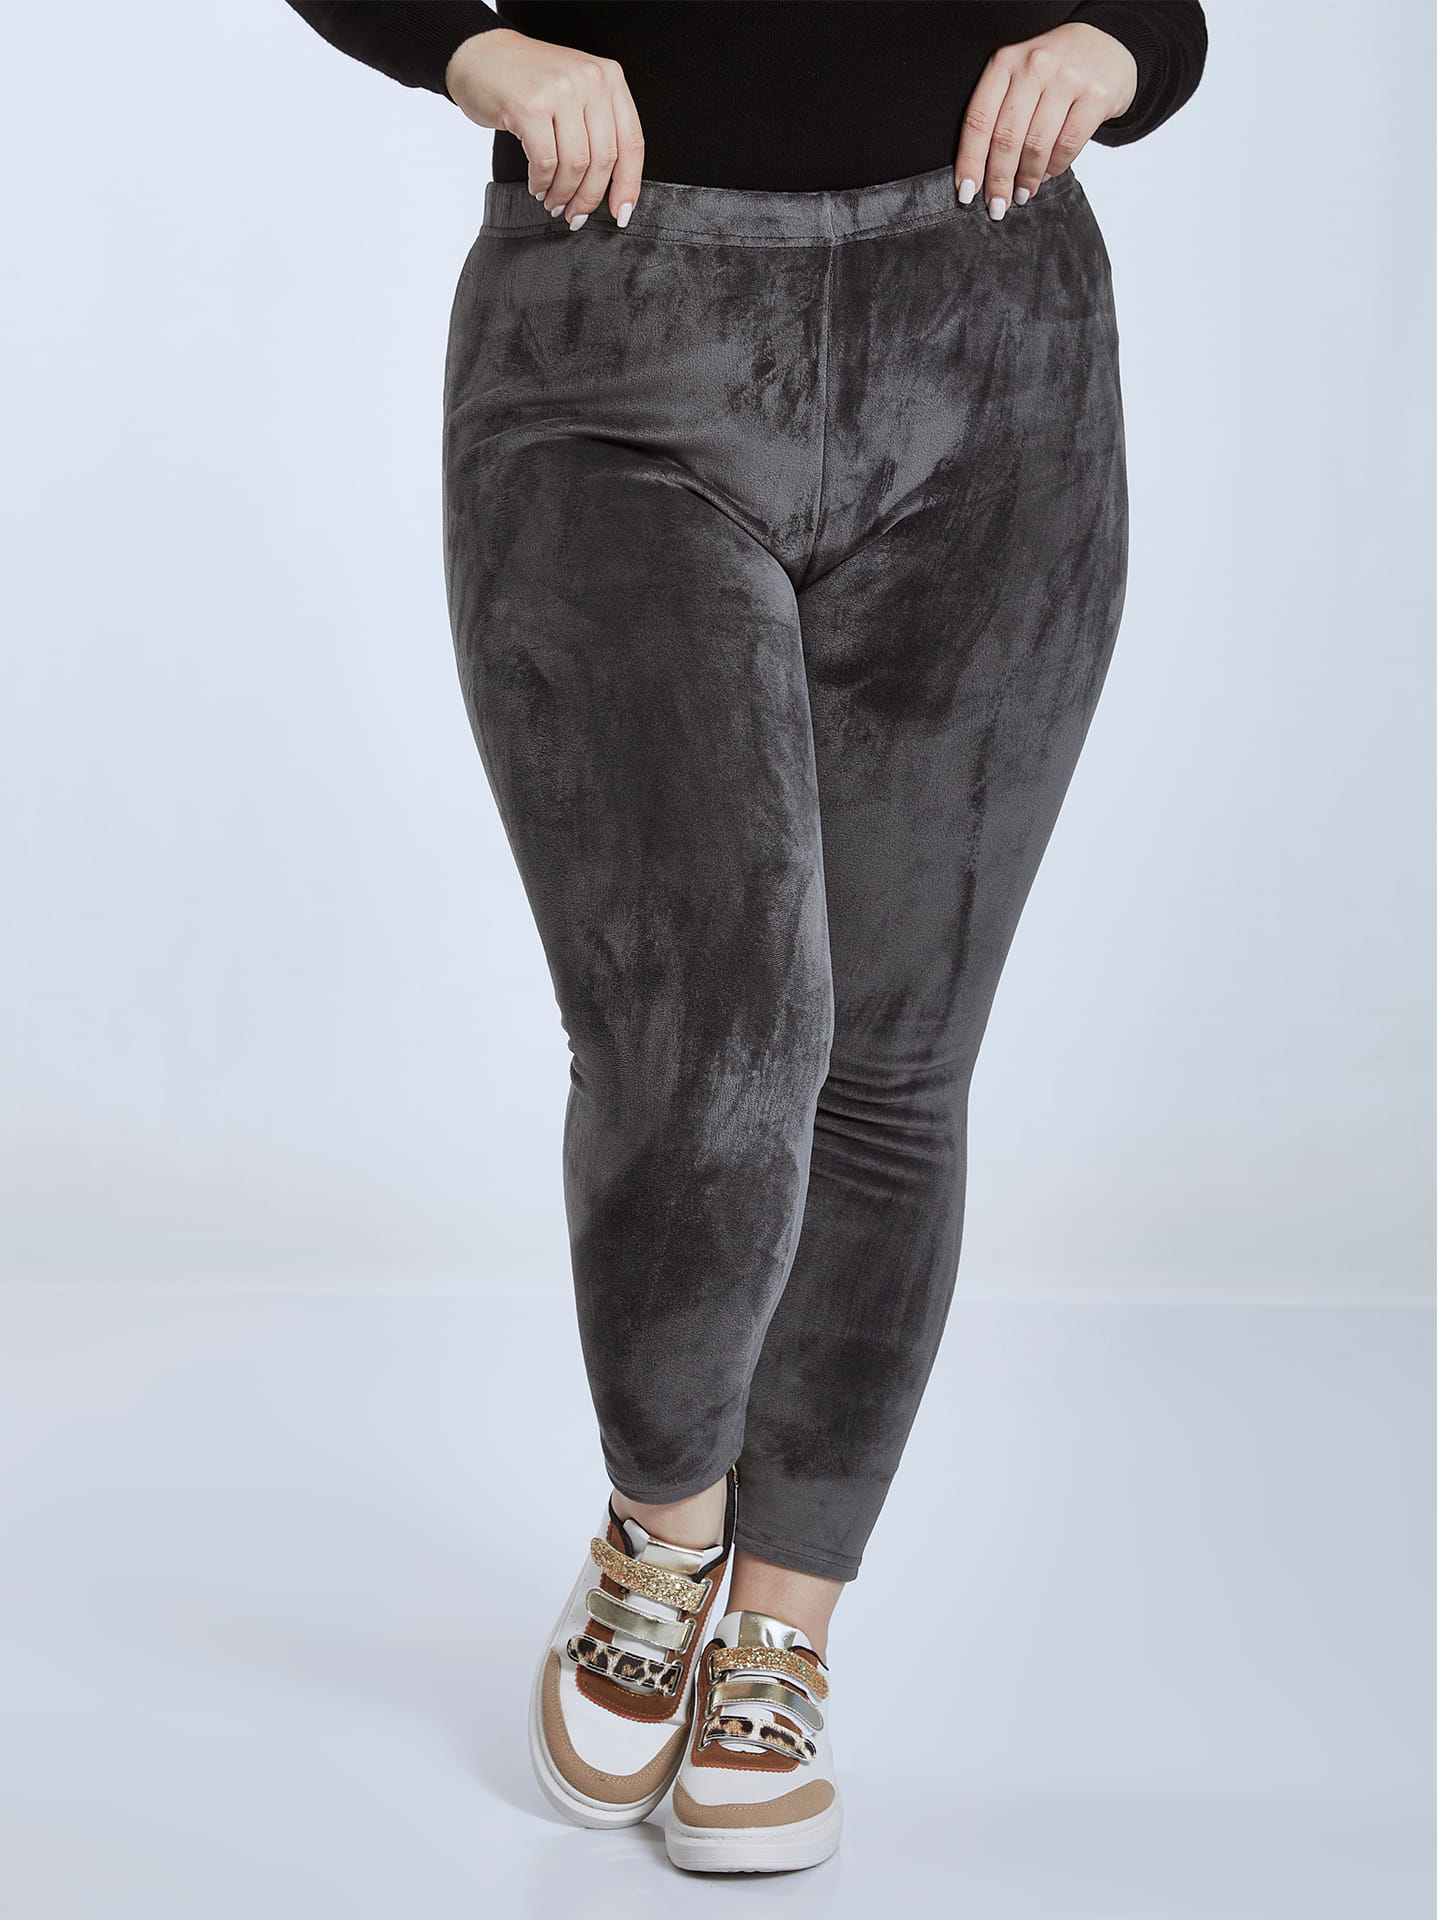 Velvet leggings curvy in grey, 5.99€